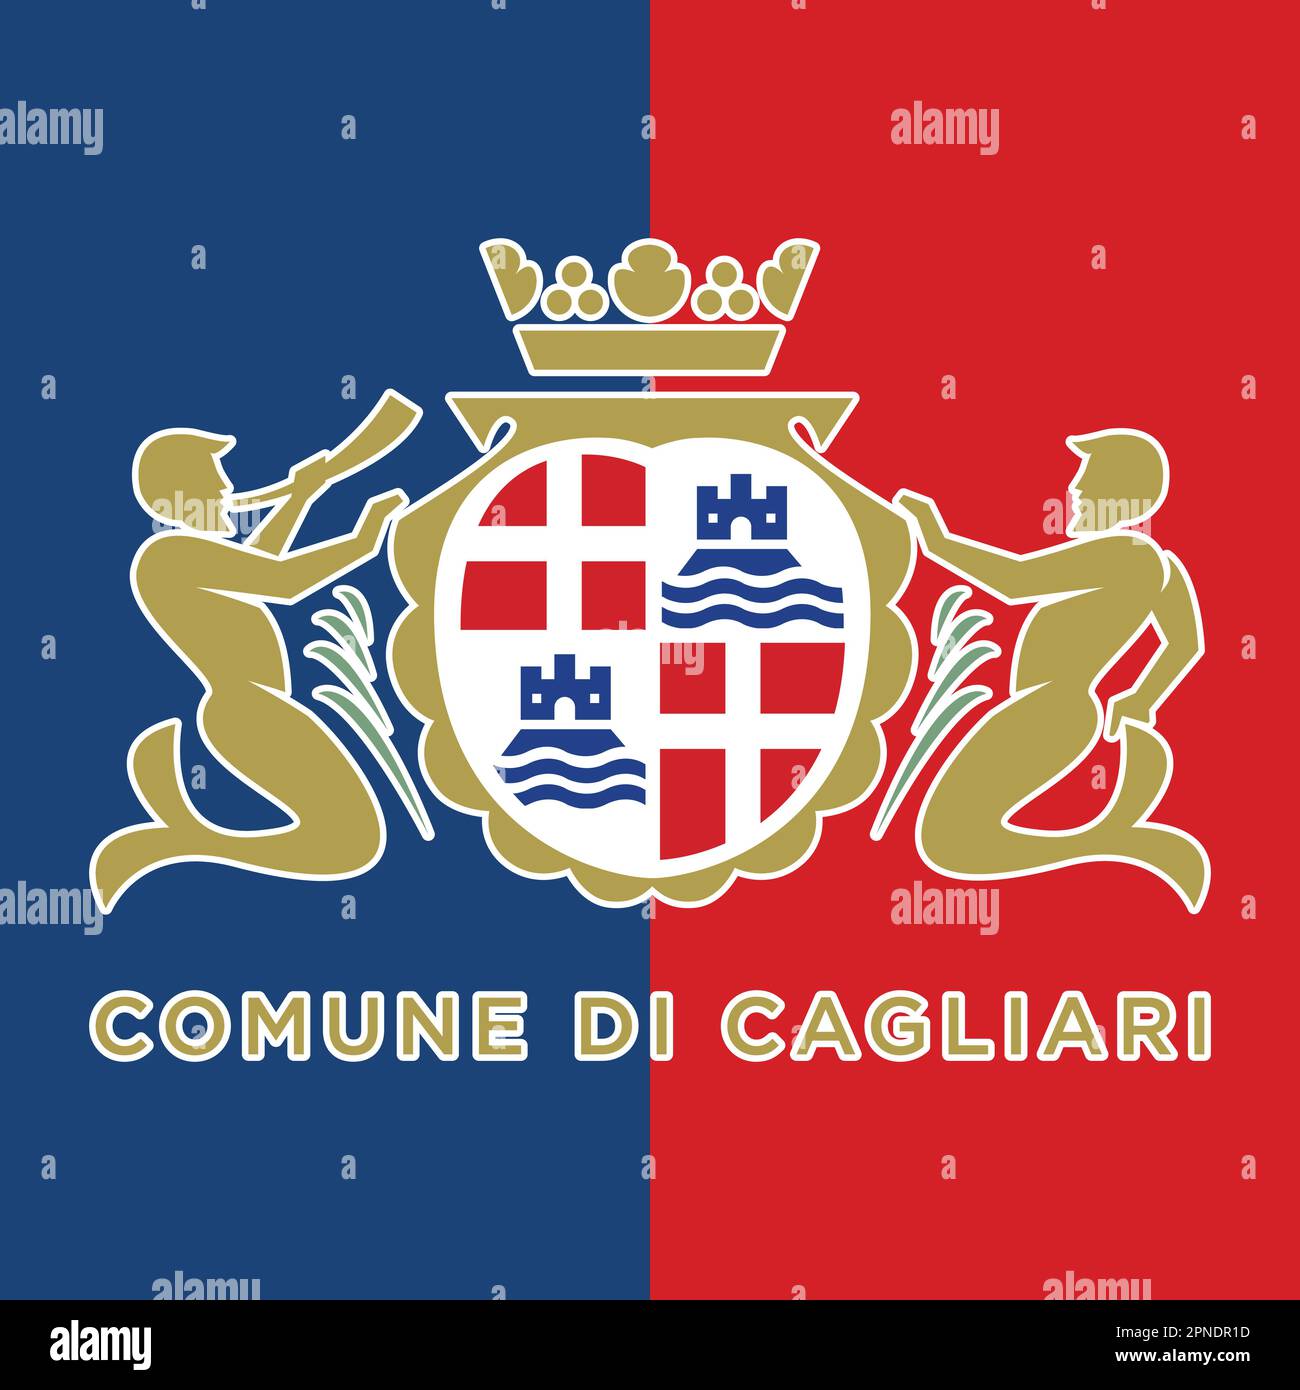 Stadt Cagliari Wappen auf den blauen und roten Farben der Flagge, Vektordarstellung Stock Vektor